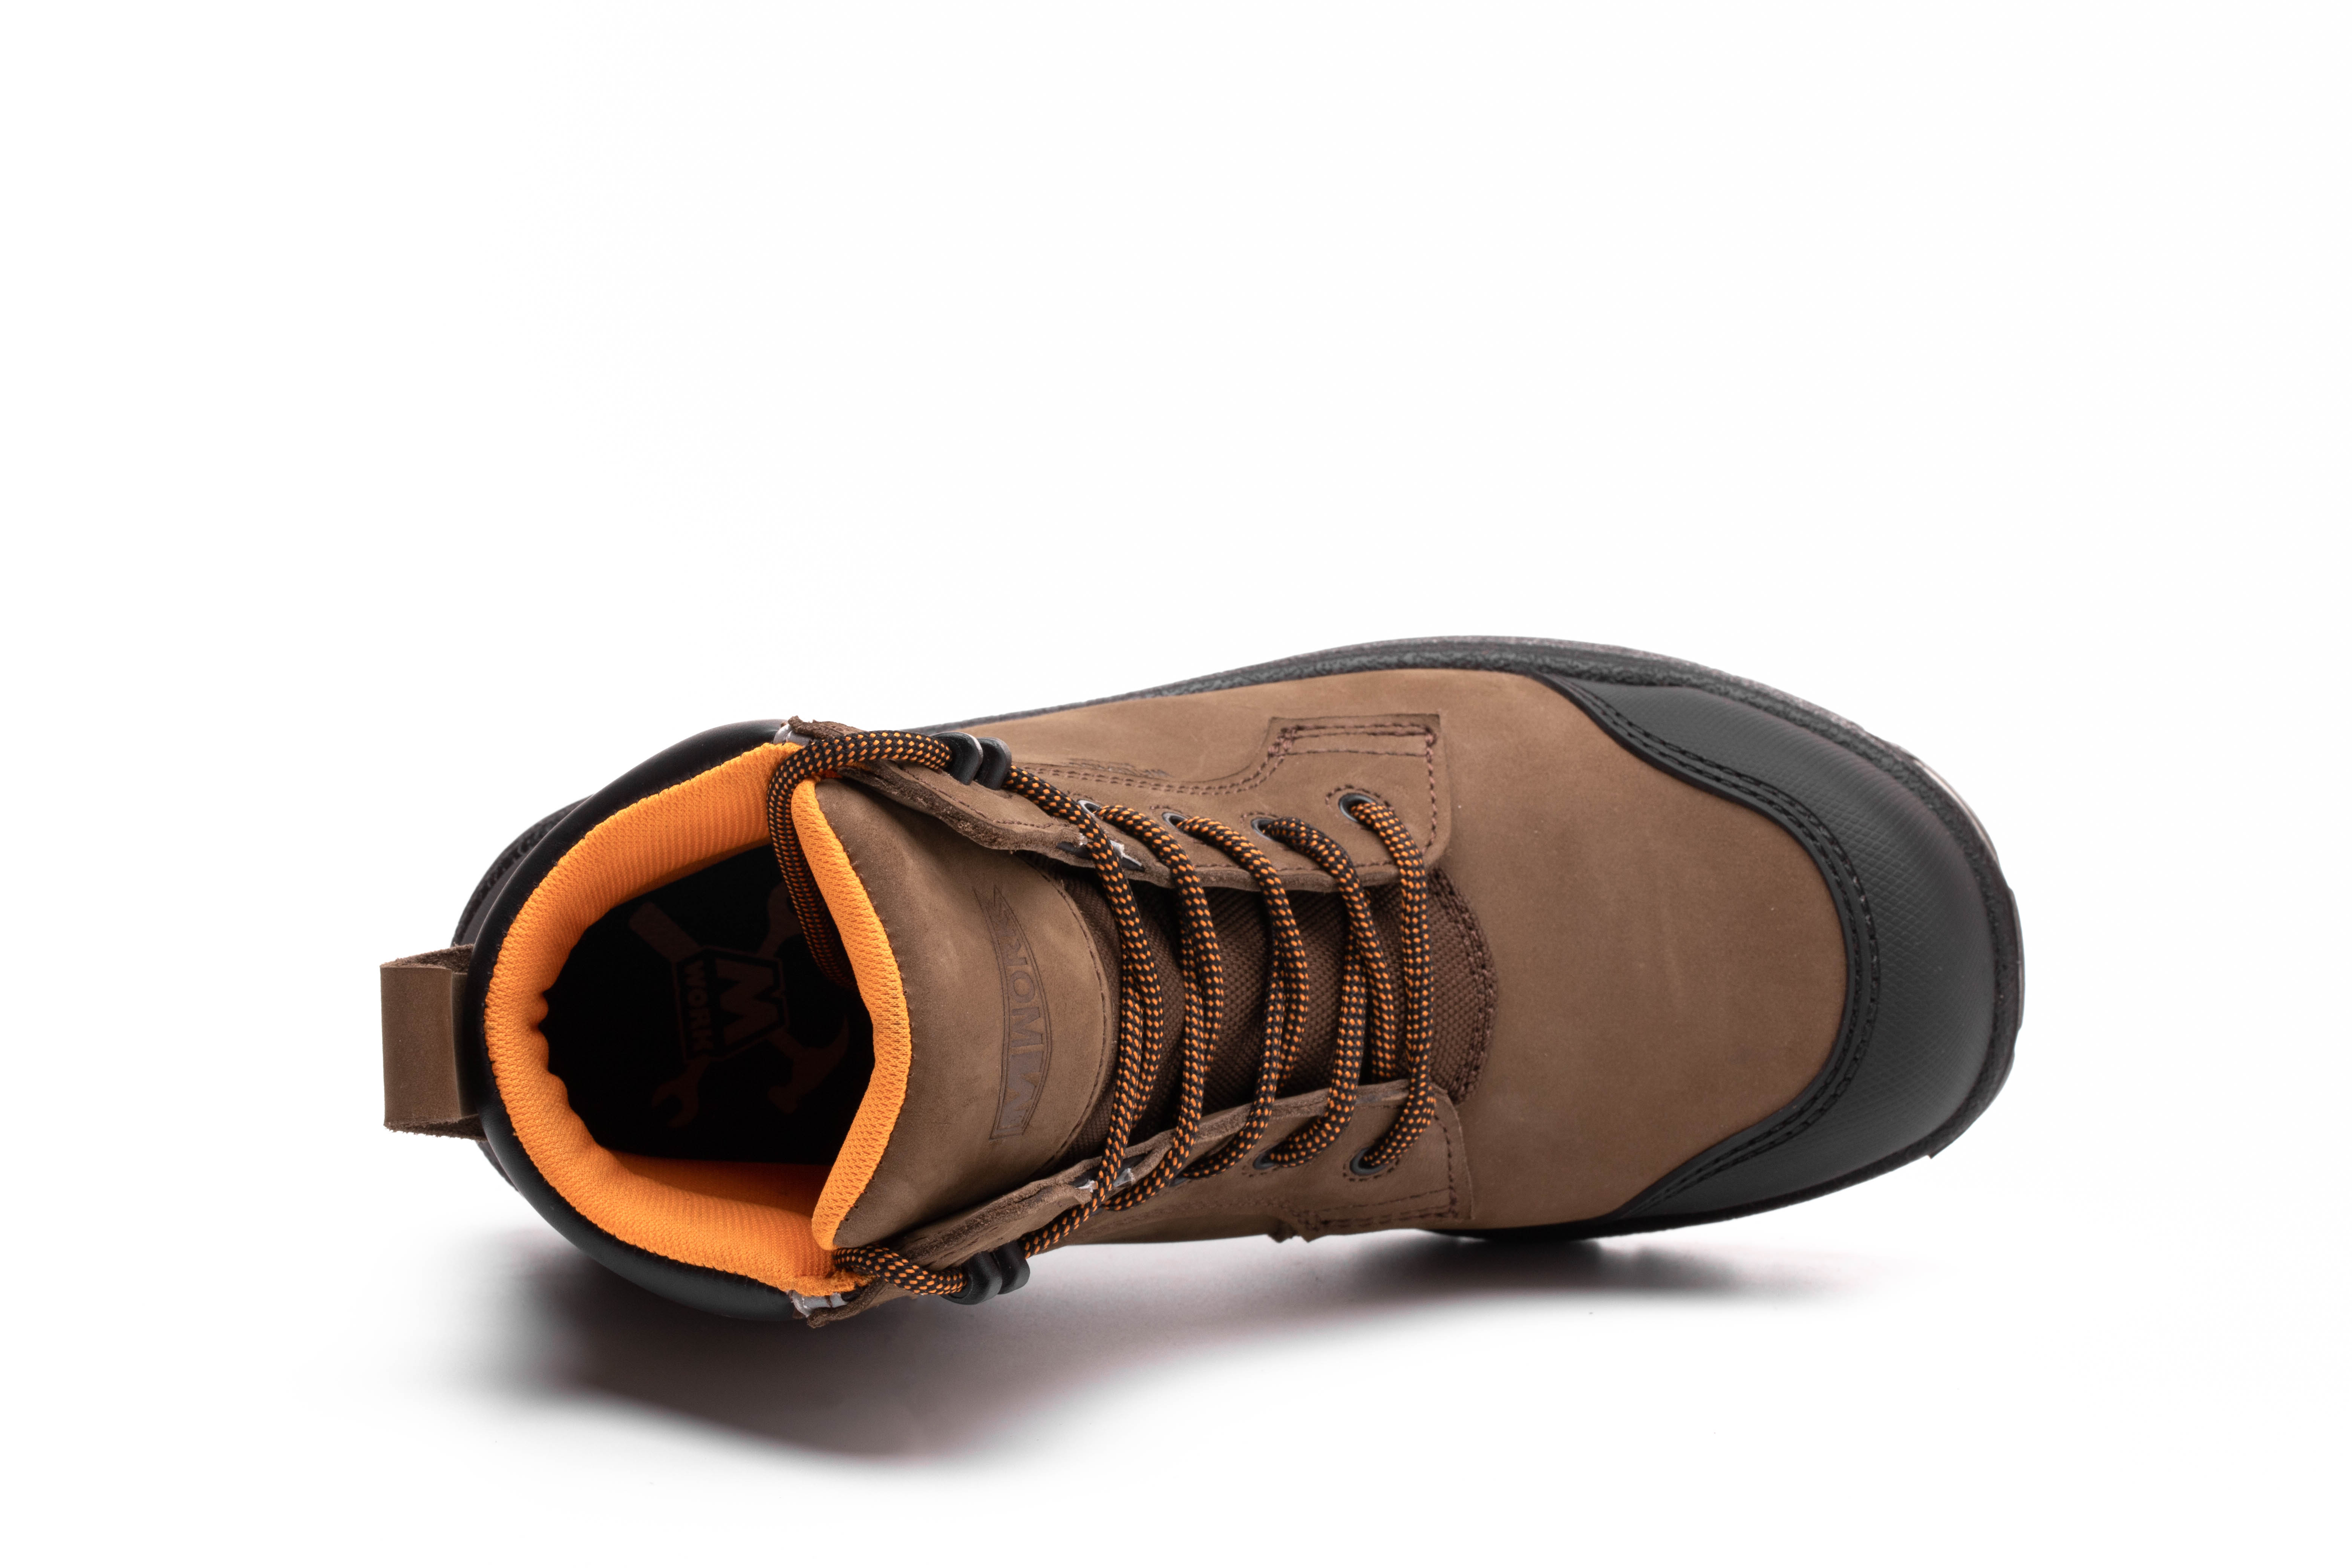 6 IN. Dk. Brown Gadsden Composite toe&Plate Waterproof No Metal Work Boot